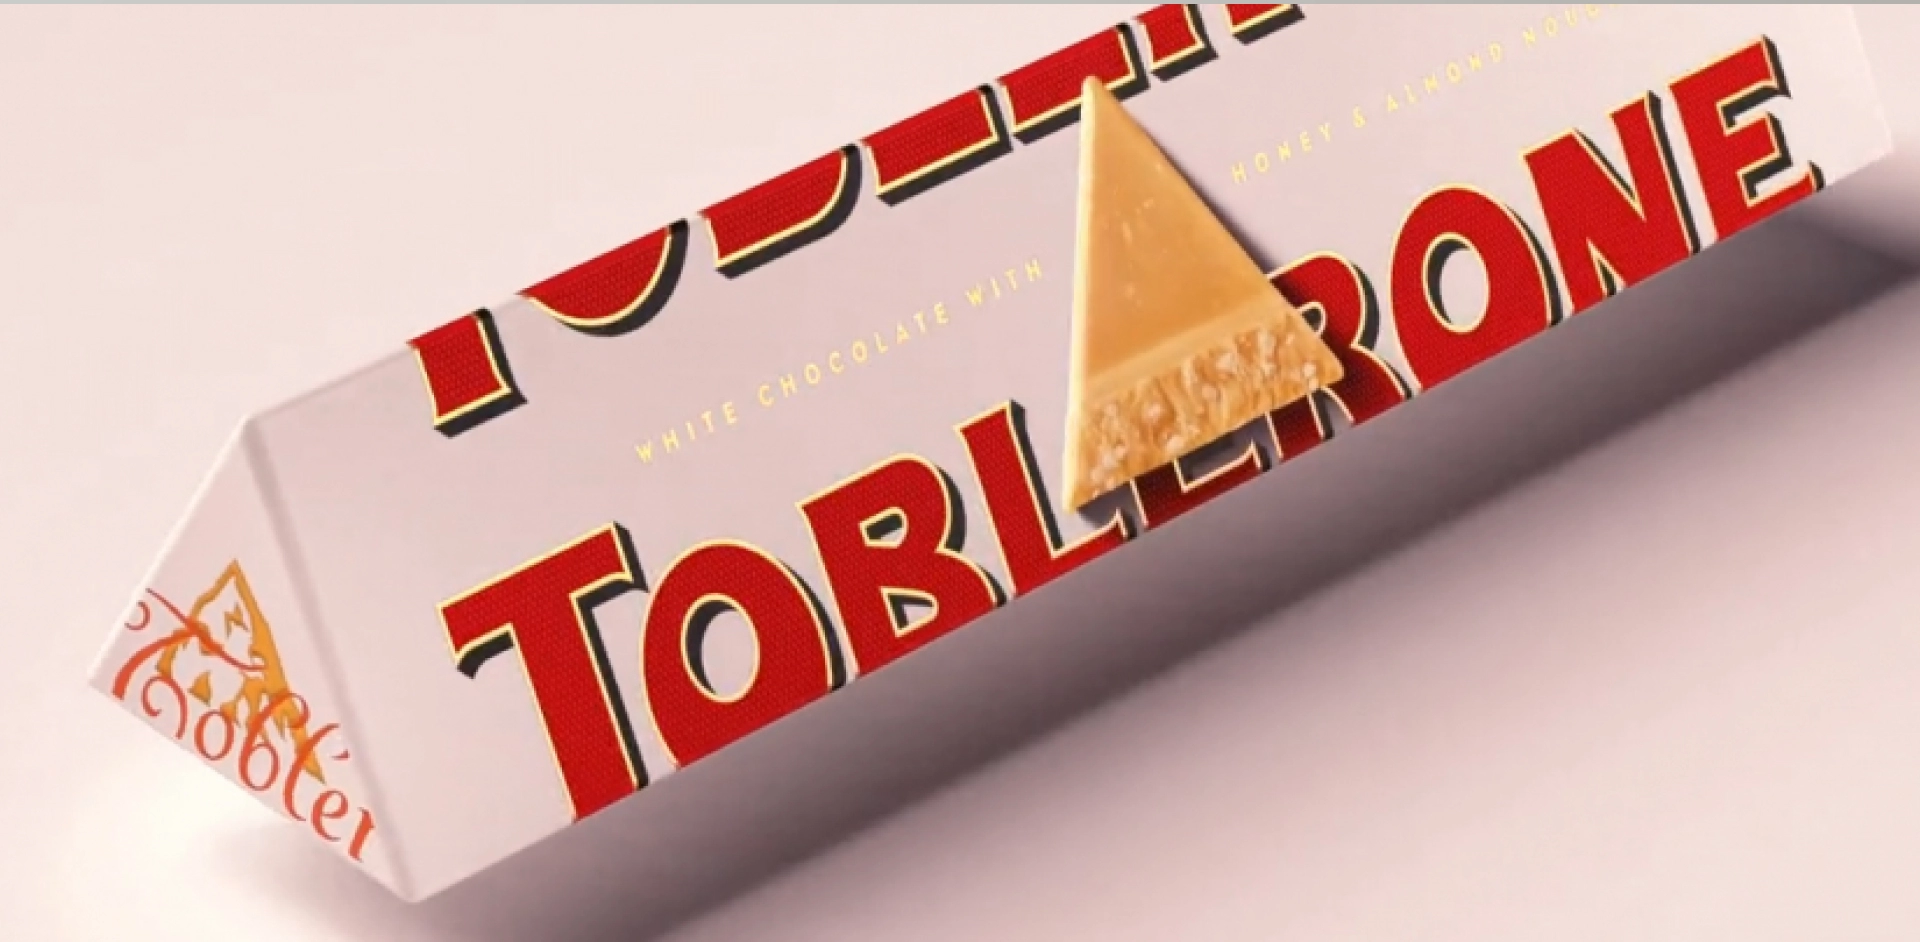 Редизайн недели: Toblerone убирает гору с шоколадок